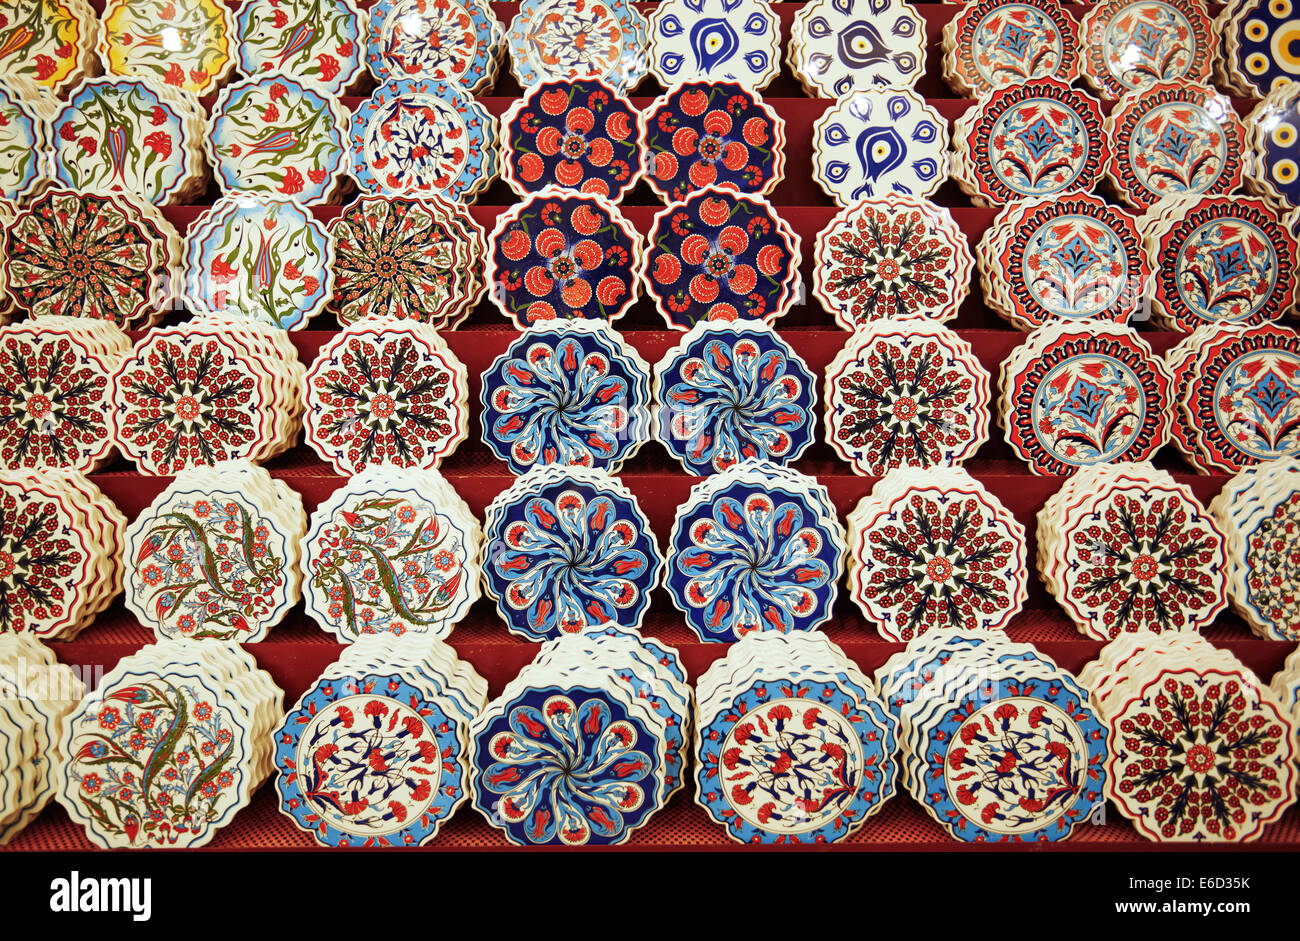 Ceramic art at pottery shop. Turkey Stock Photo